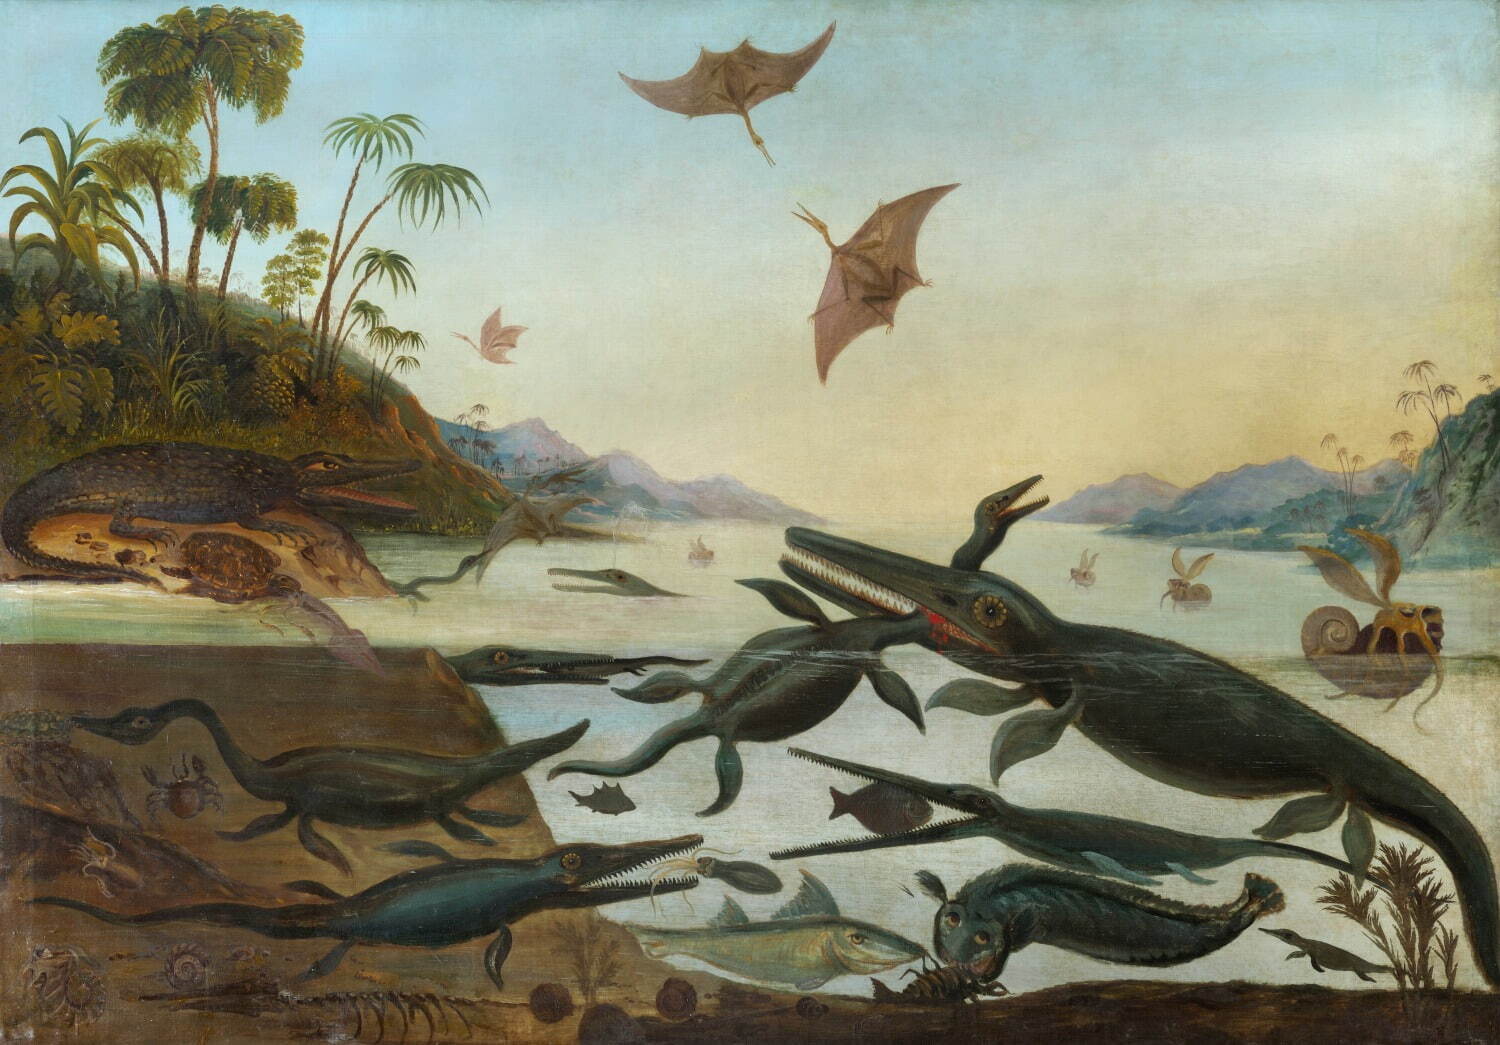 ロバート・ファレン《ジュラ紀の海の生き物―ドゥリア・アンティクィオル(太古のドーセット)》1850年頃 油彩・カンヴァス 190×268cm ケンブリッジ大学セジウィック地球科学博物館